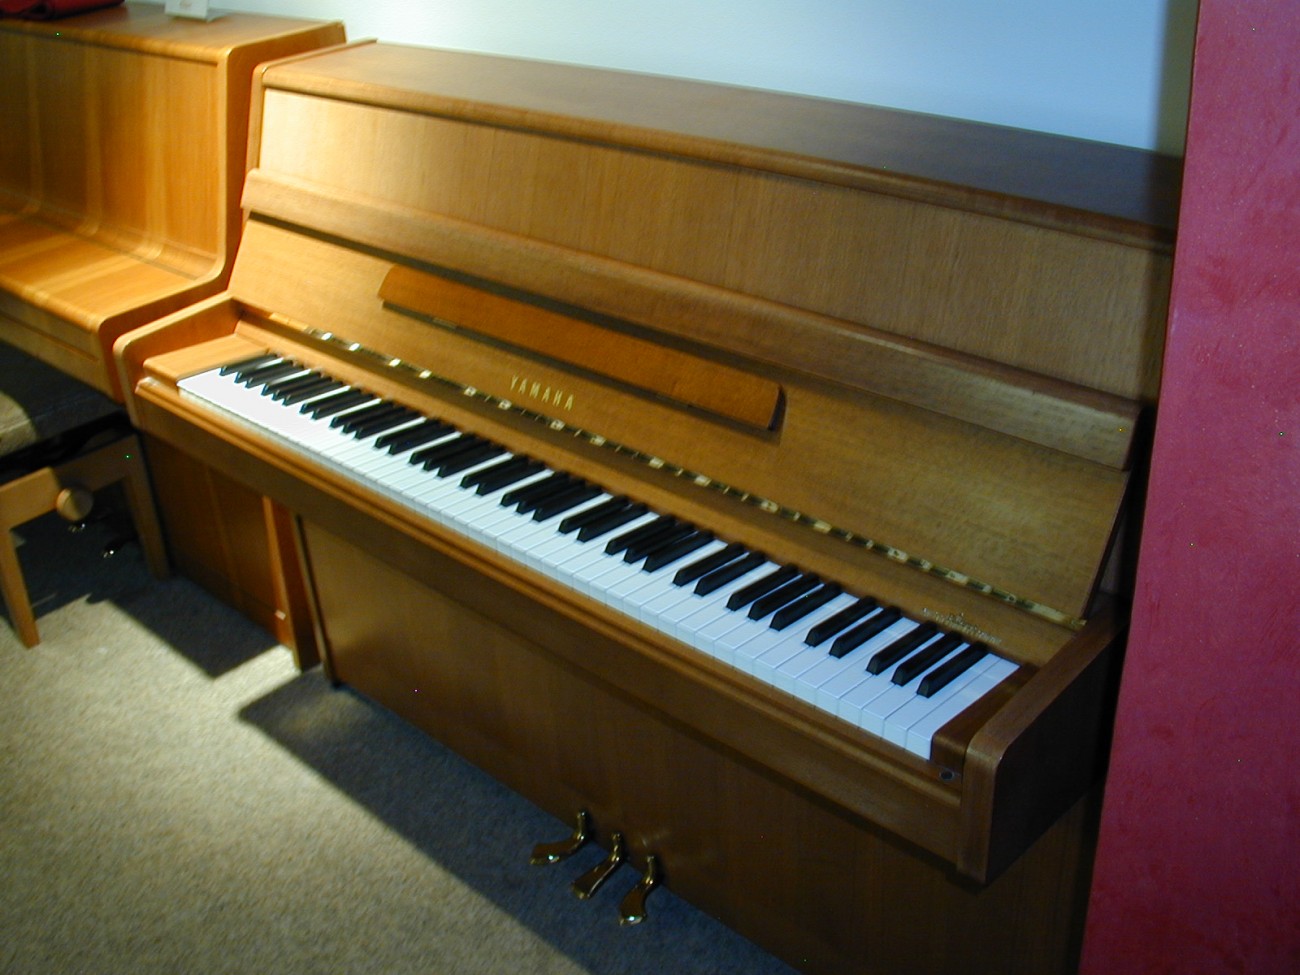 Klavier gebraucht YAMAHA M1J Nußbaum